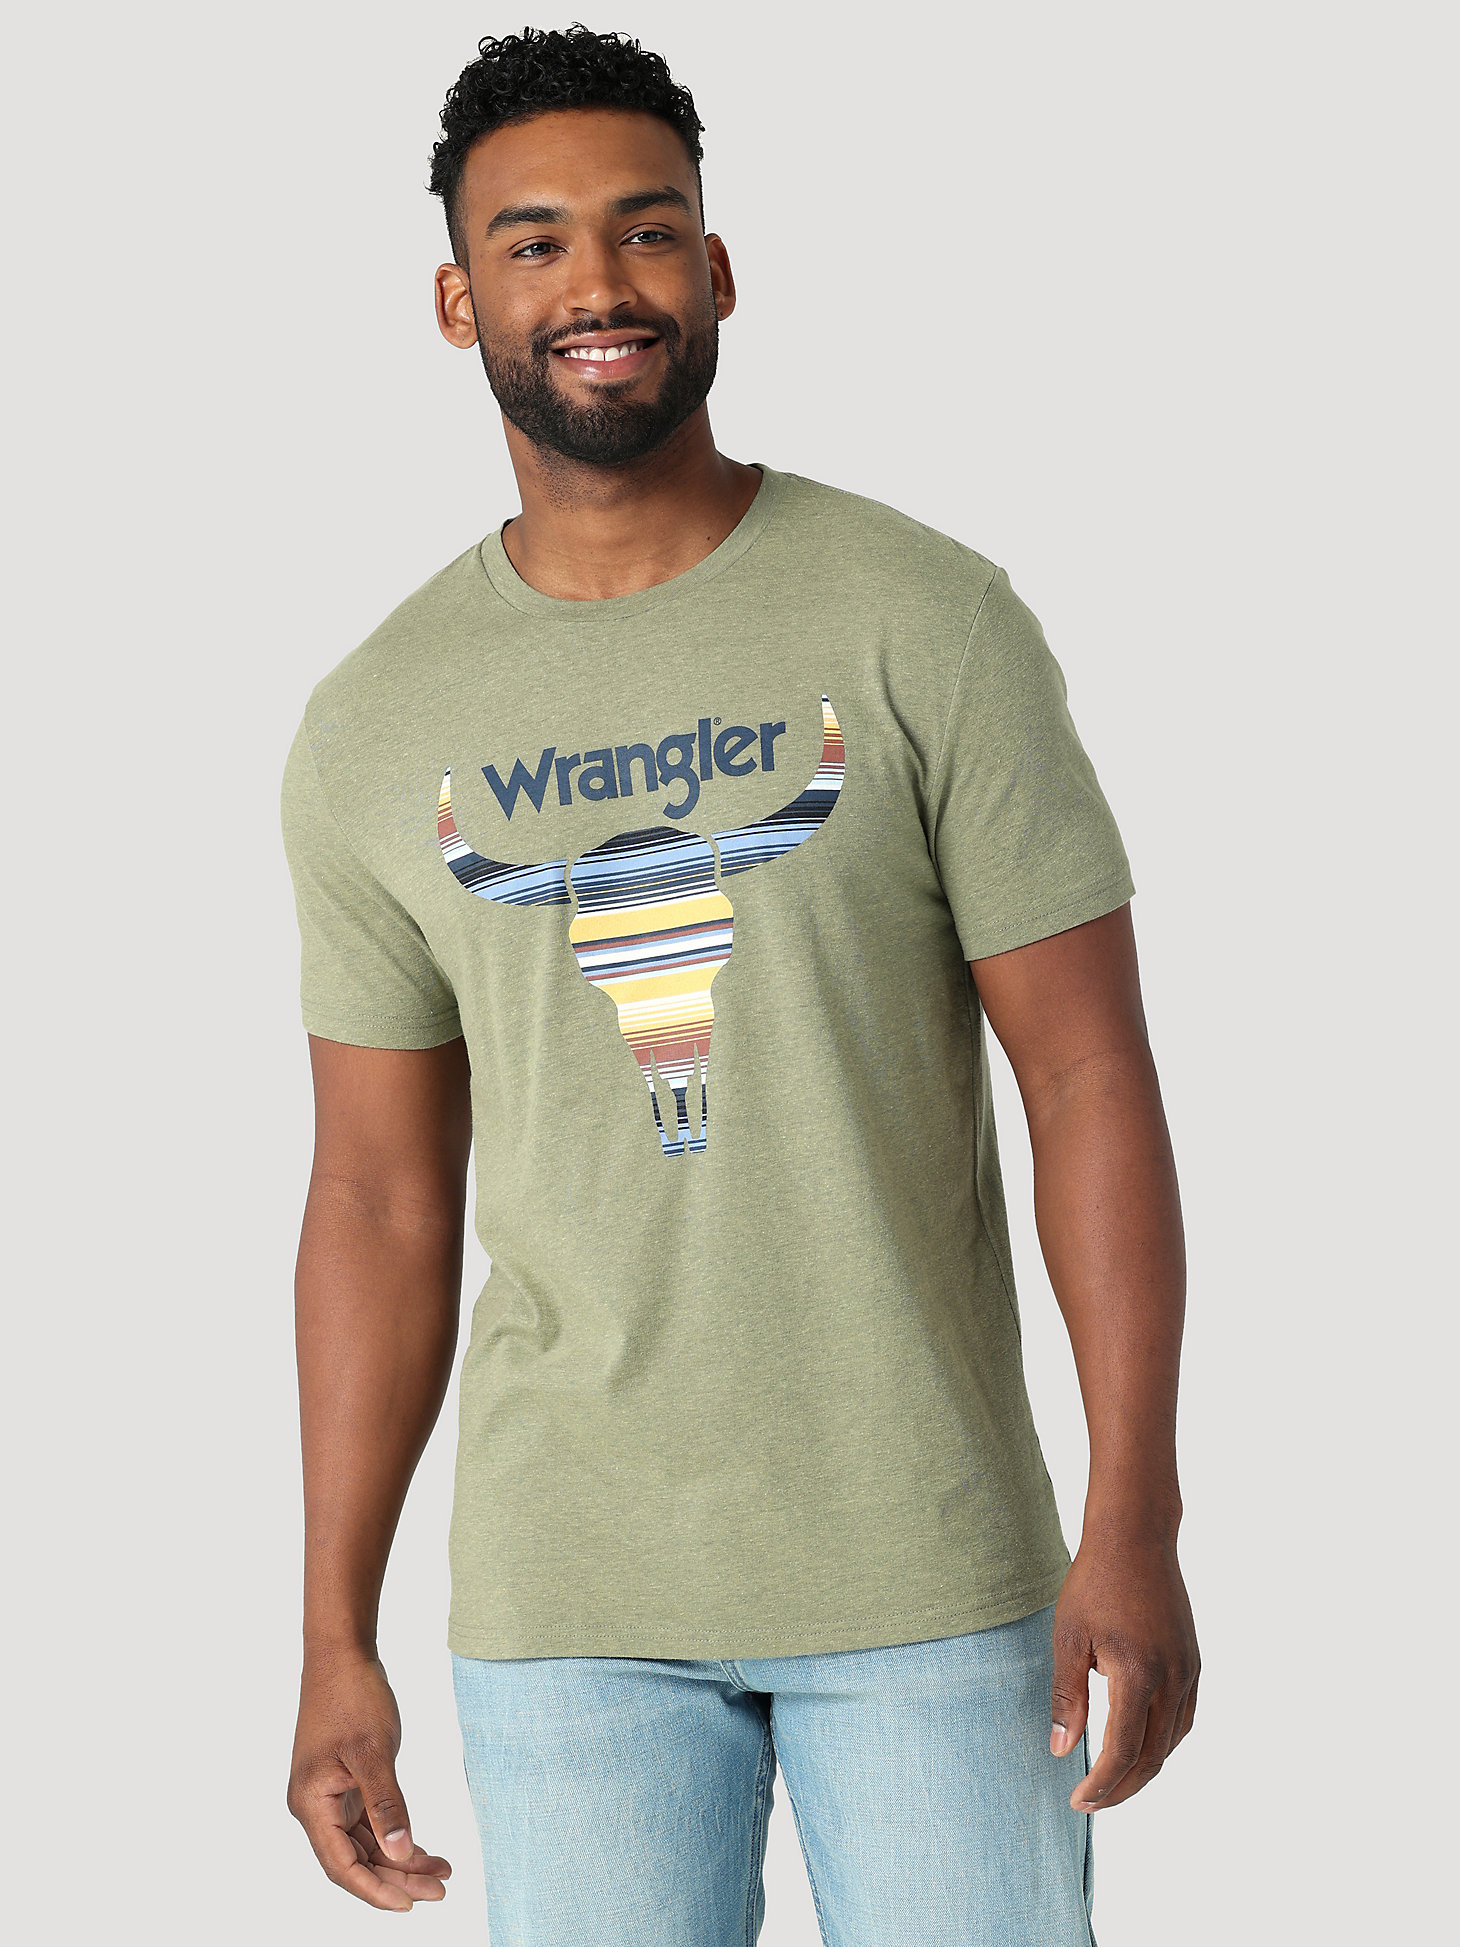 Men's Stripe Steer Head Graphic T-Shirt in Sage Heather alternative view 3